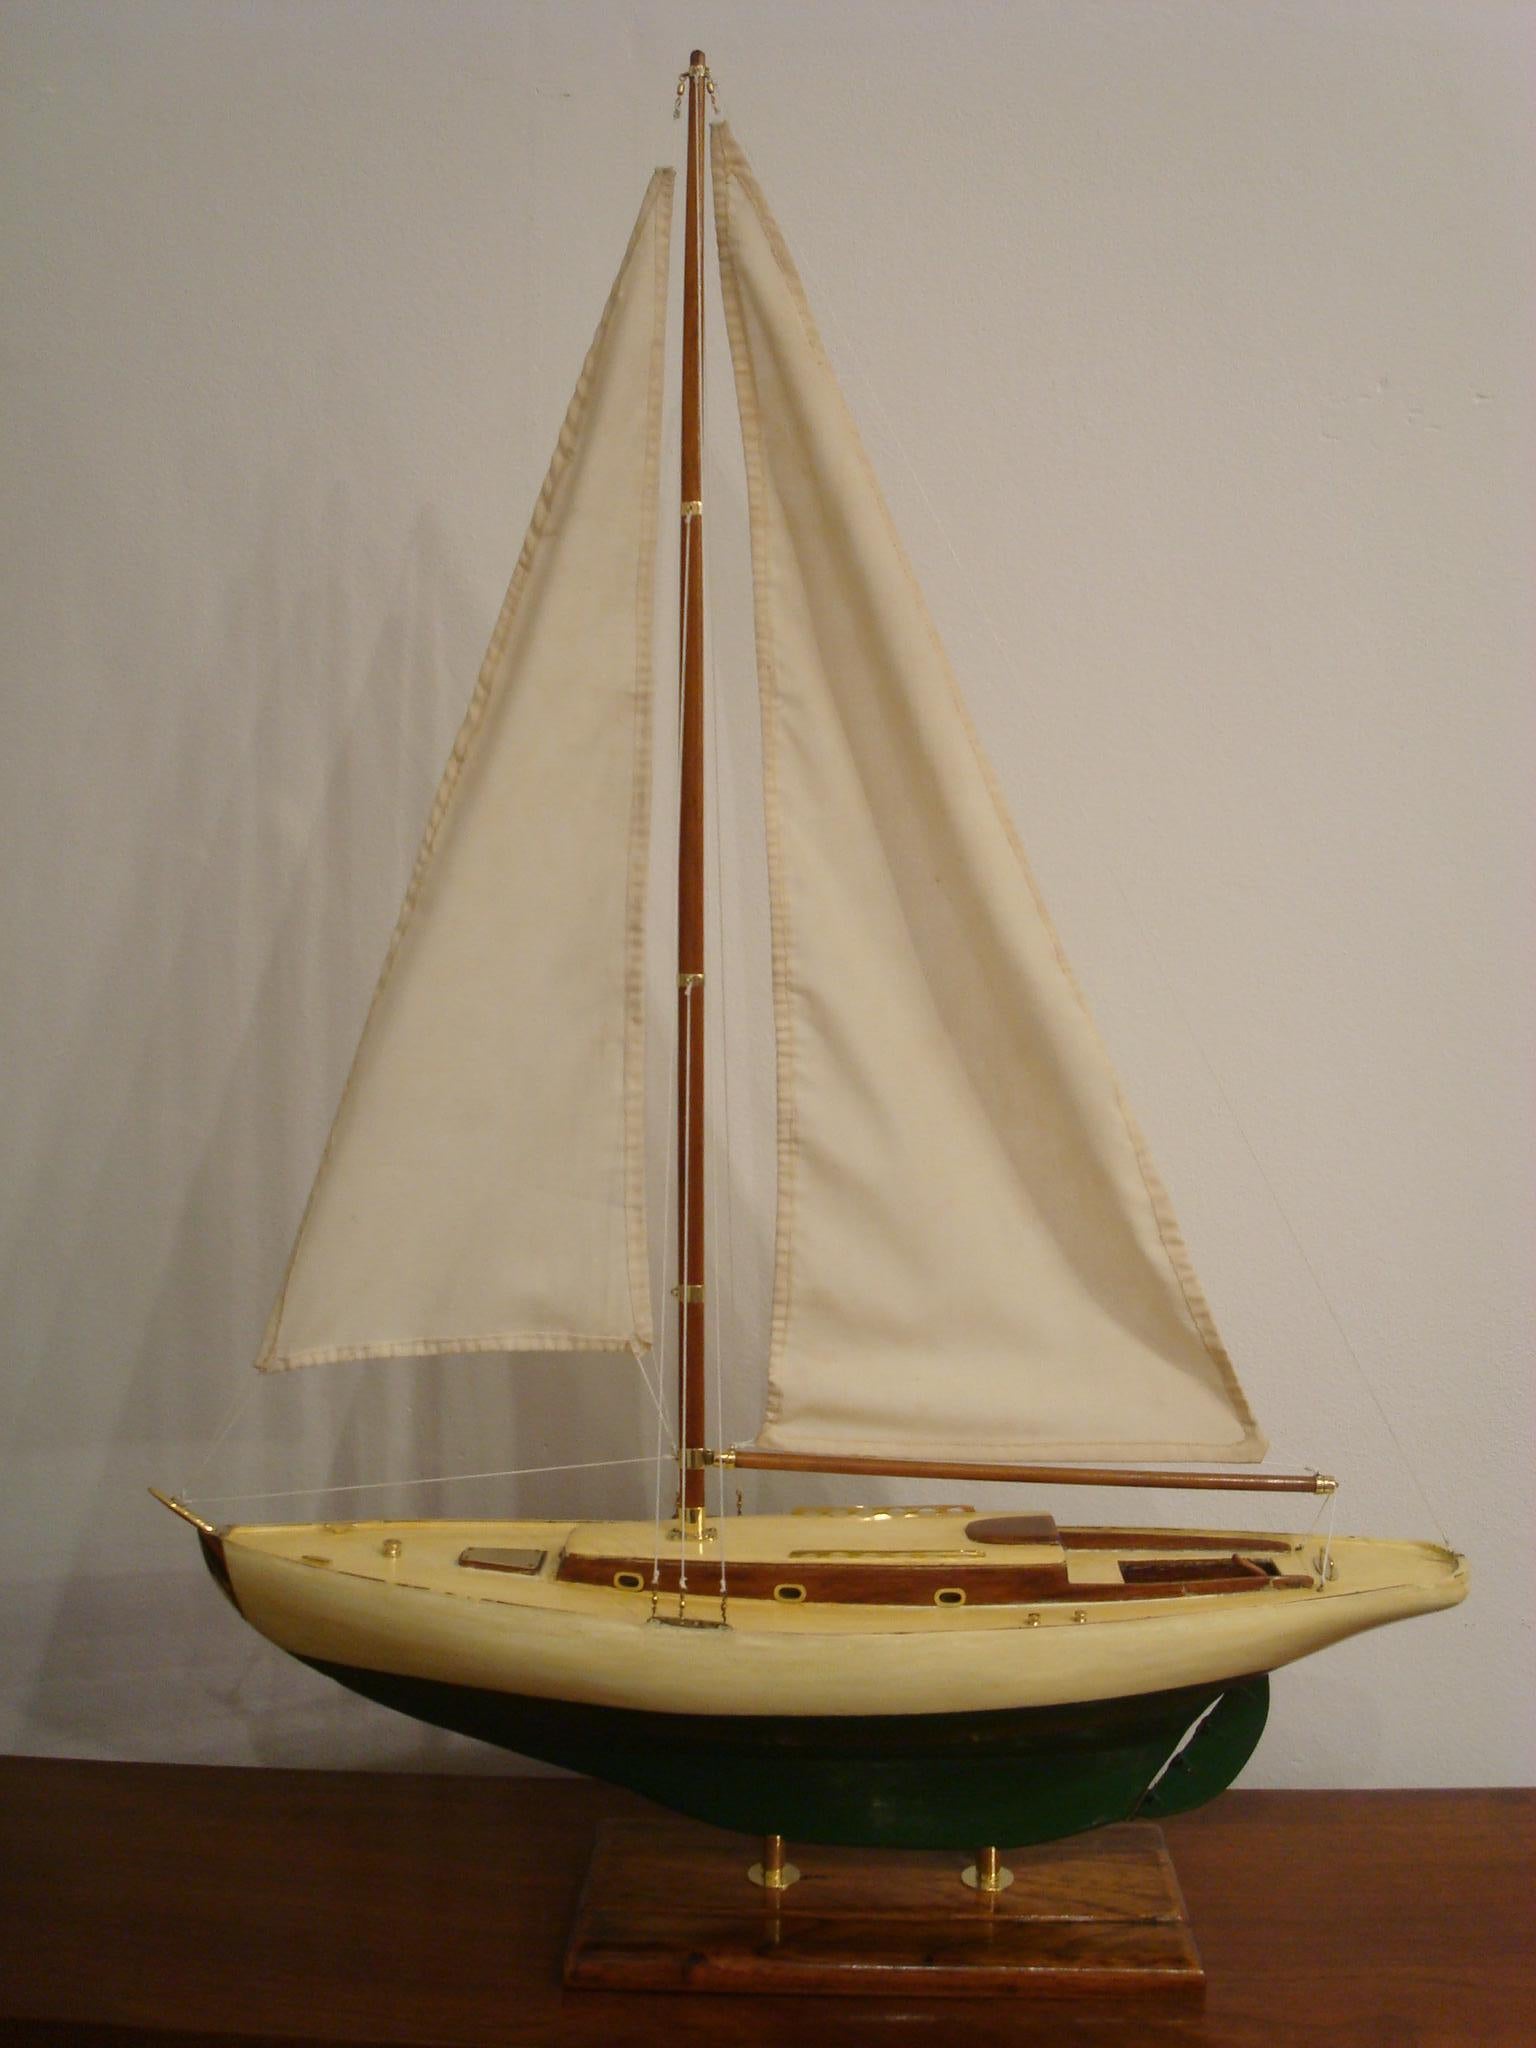 Segelbootmodell auf Ständer. Gehäuse aus lackiertem Holz und Zubehör aus Bronze.
Hergestellt in den 1920er-1930er Jahren. Sehr schöner restaurierter Zustand.
Sehr dekorativer Artikel, perfekt für jeden Nautik-Fan.

               